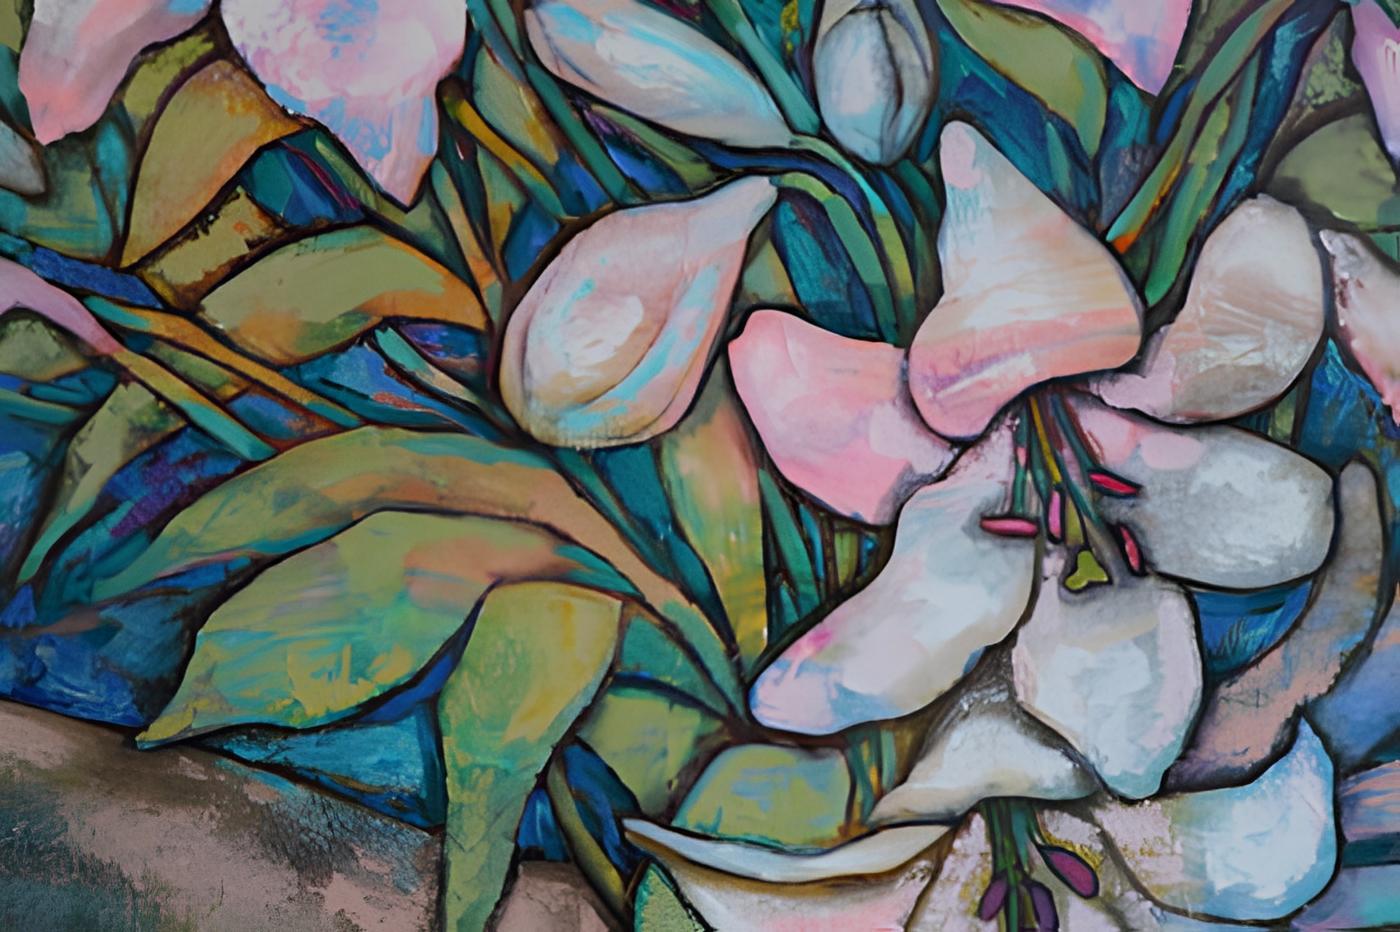 In diesem ausdrucksstarken Werk habe ich Acrylfarben übereinandergelegt, um das zarte Zusammenspiel von Licht und Farbe zwischen den Blüten einzufangen. Meine Emotionen fließen durch die Pinselstriche und erinnern an Wachstum und